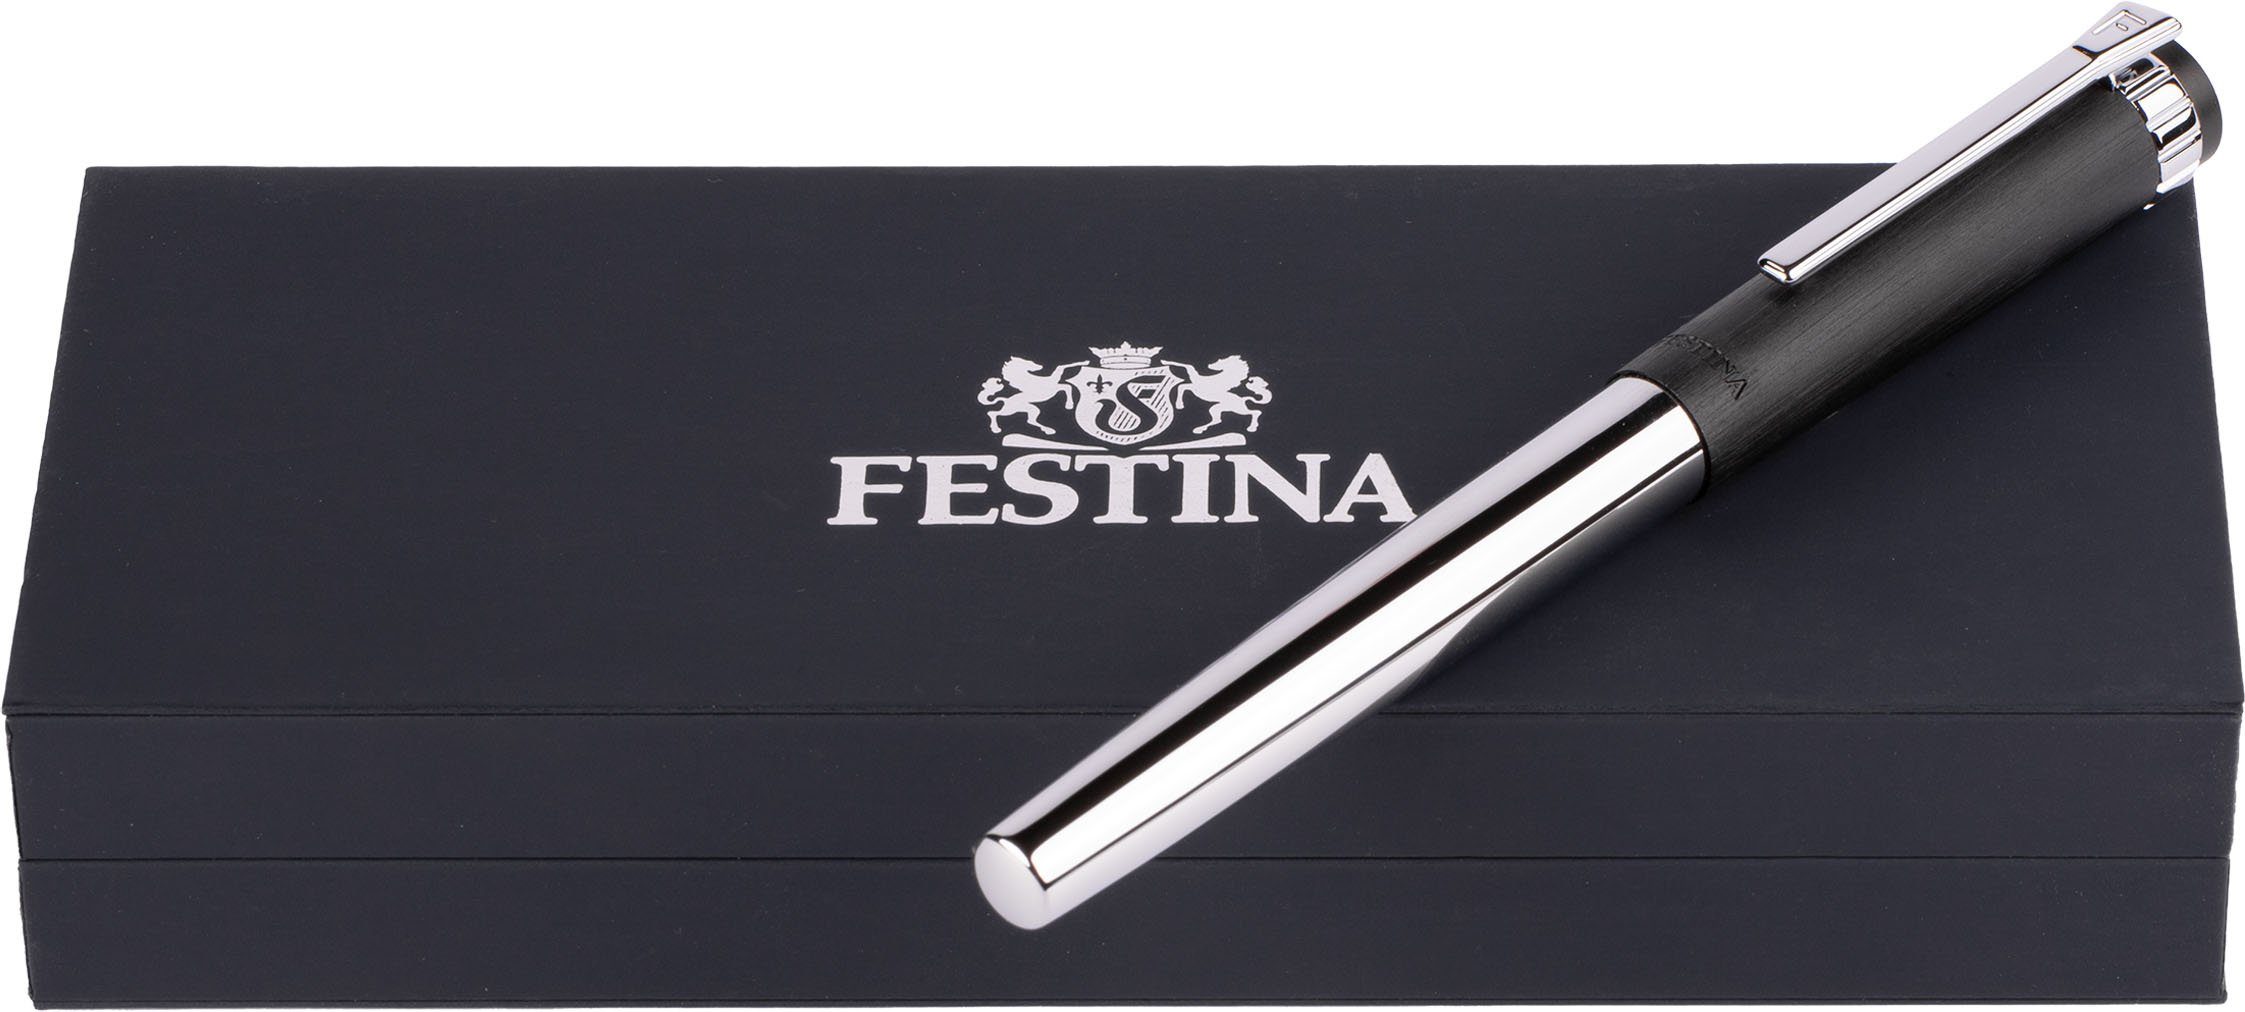 FWS5109/A, auch als Etui, Tintenroller Prestige, Festina inklusive ideal Geschenk